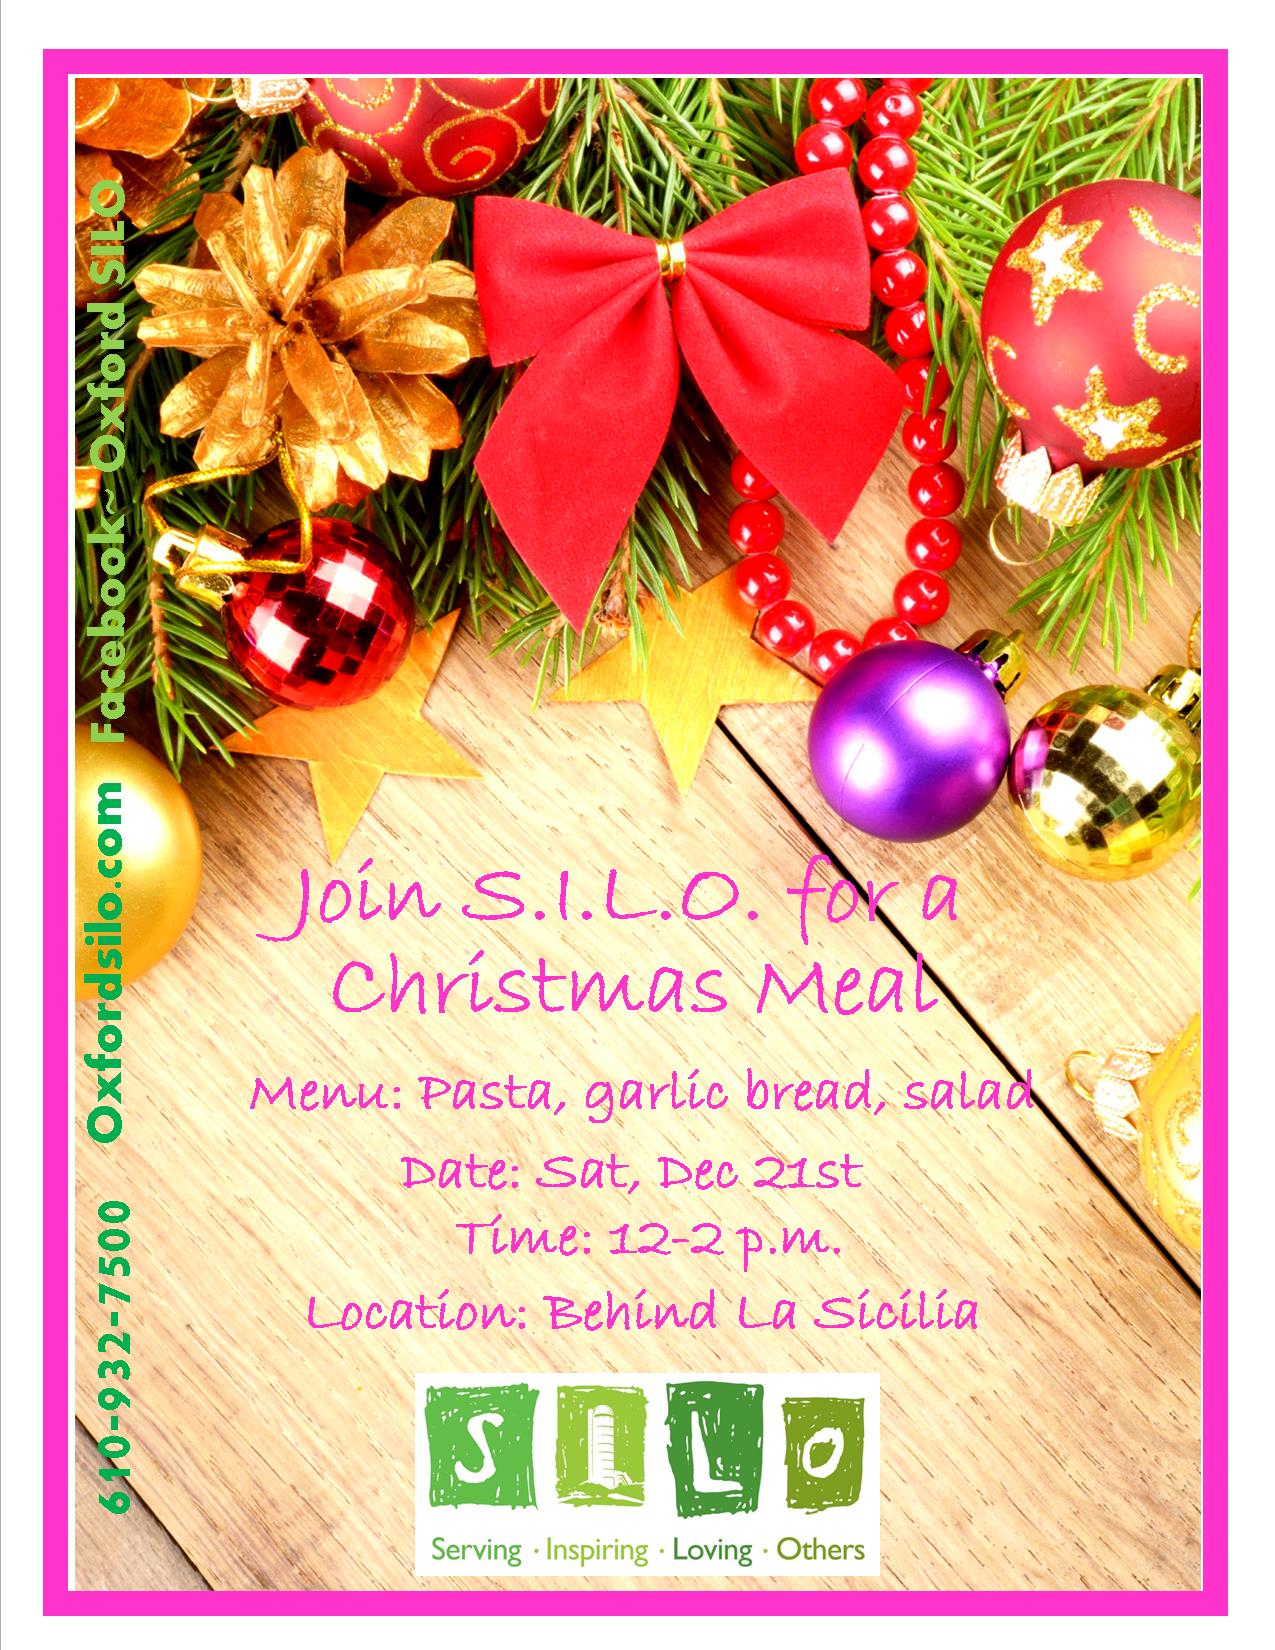 Christmas Meal, December 21st, 12-2pm, behind La Sicilia Restaurant